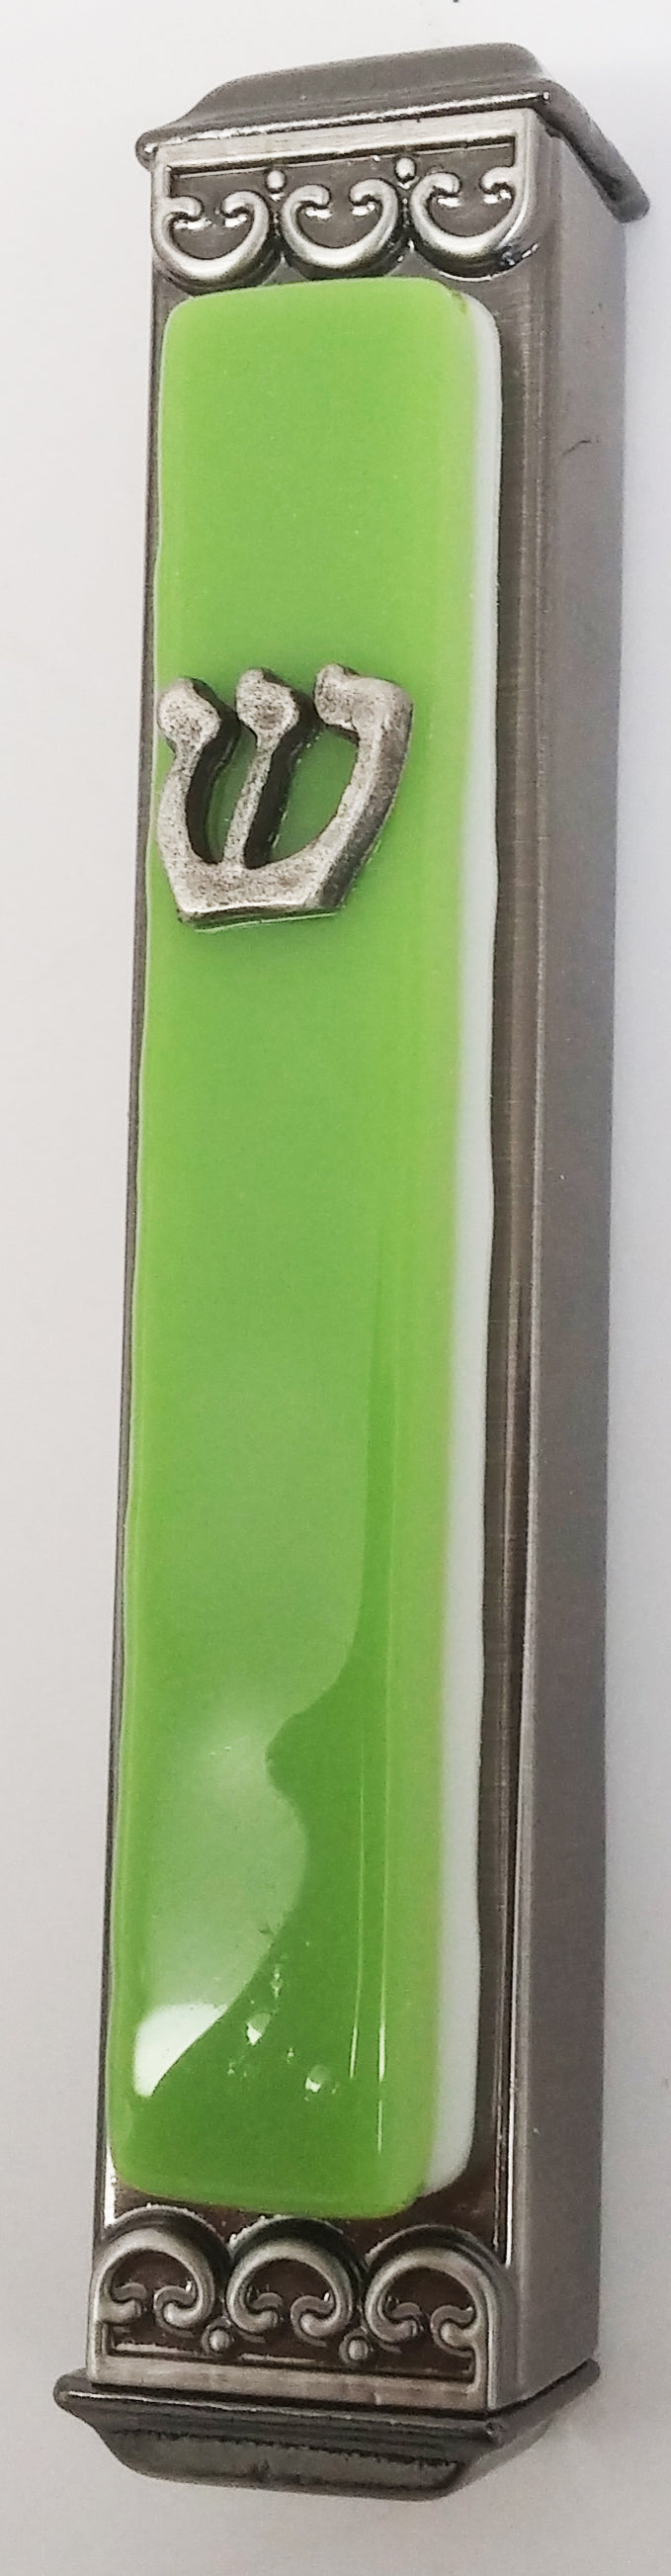 Amazon Green on White - Glass on Metal Mezuzah